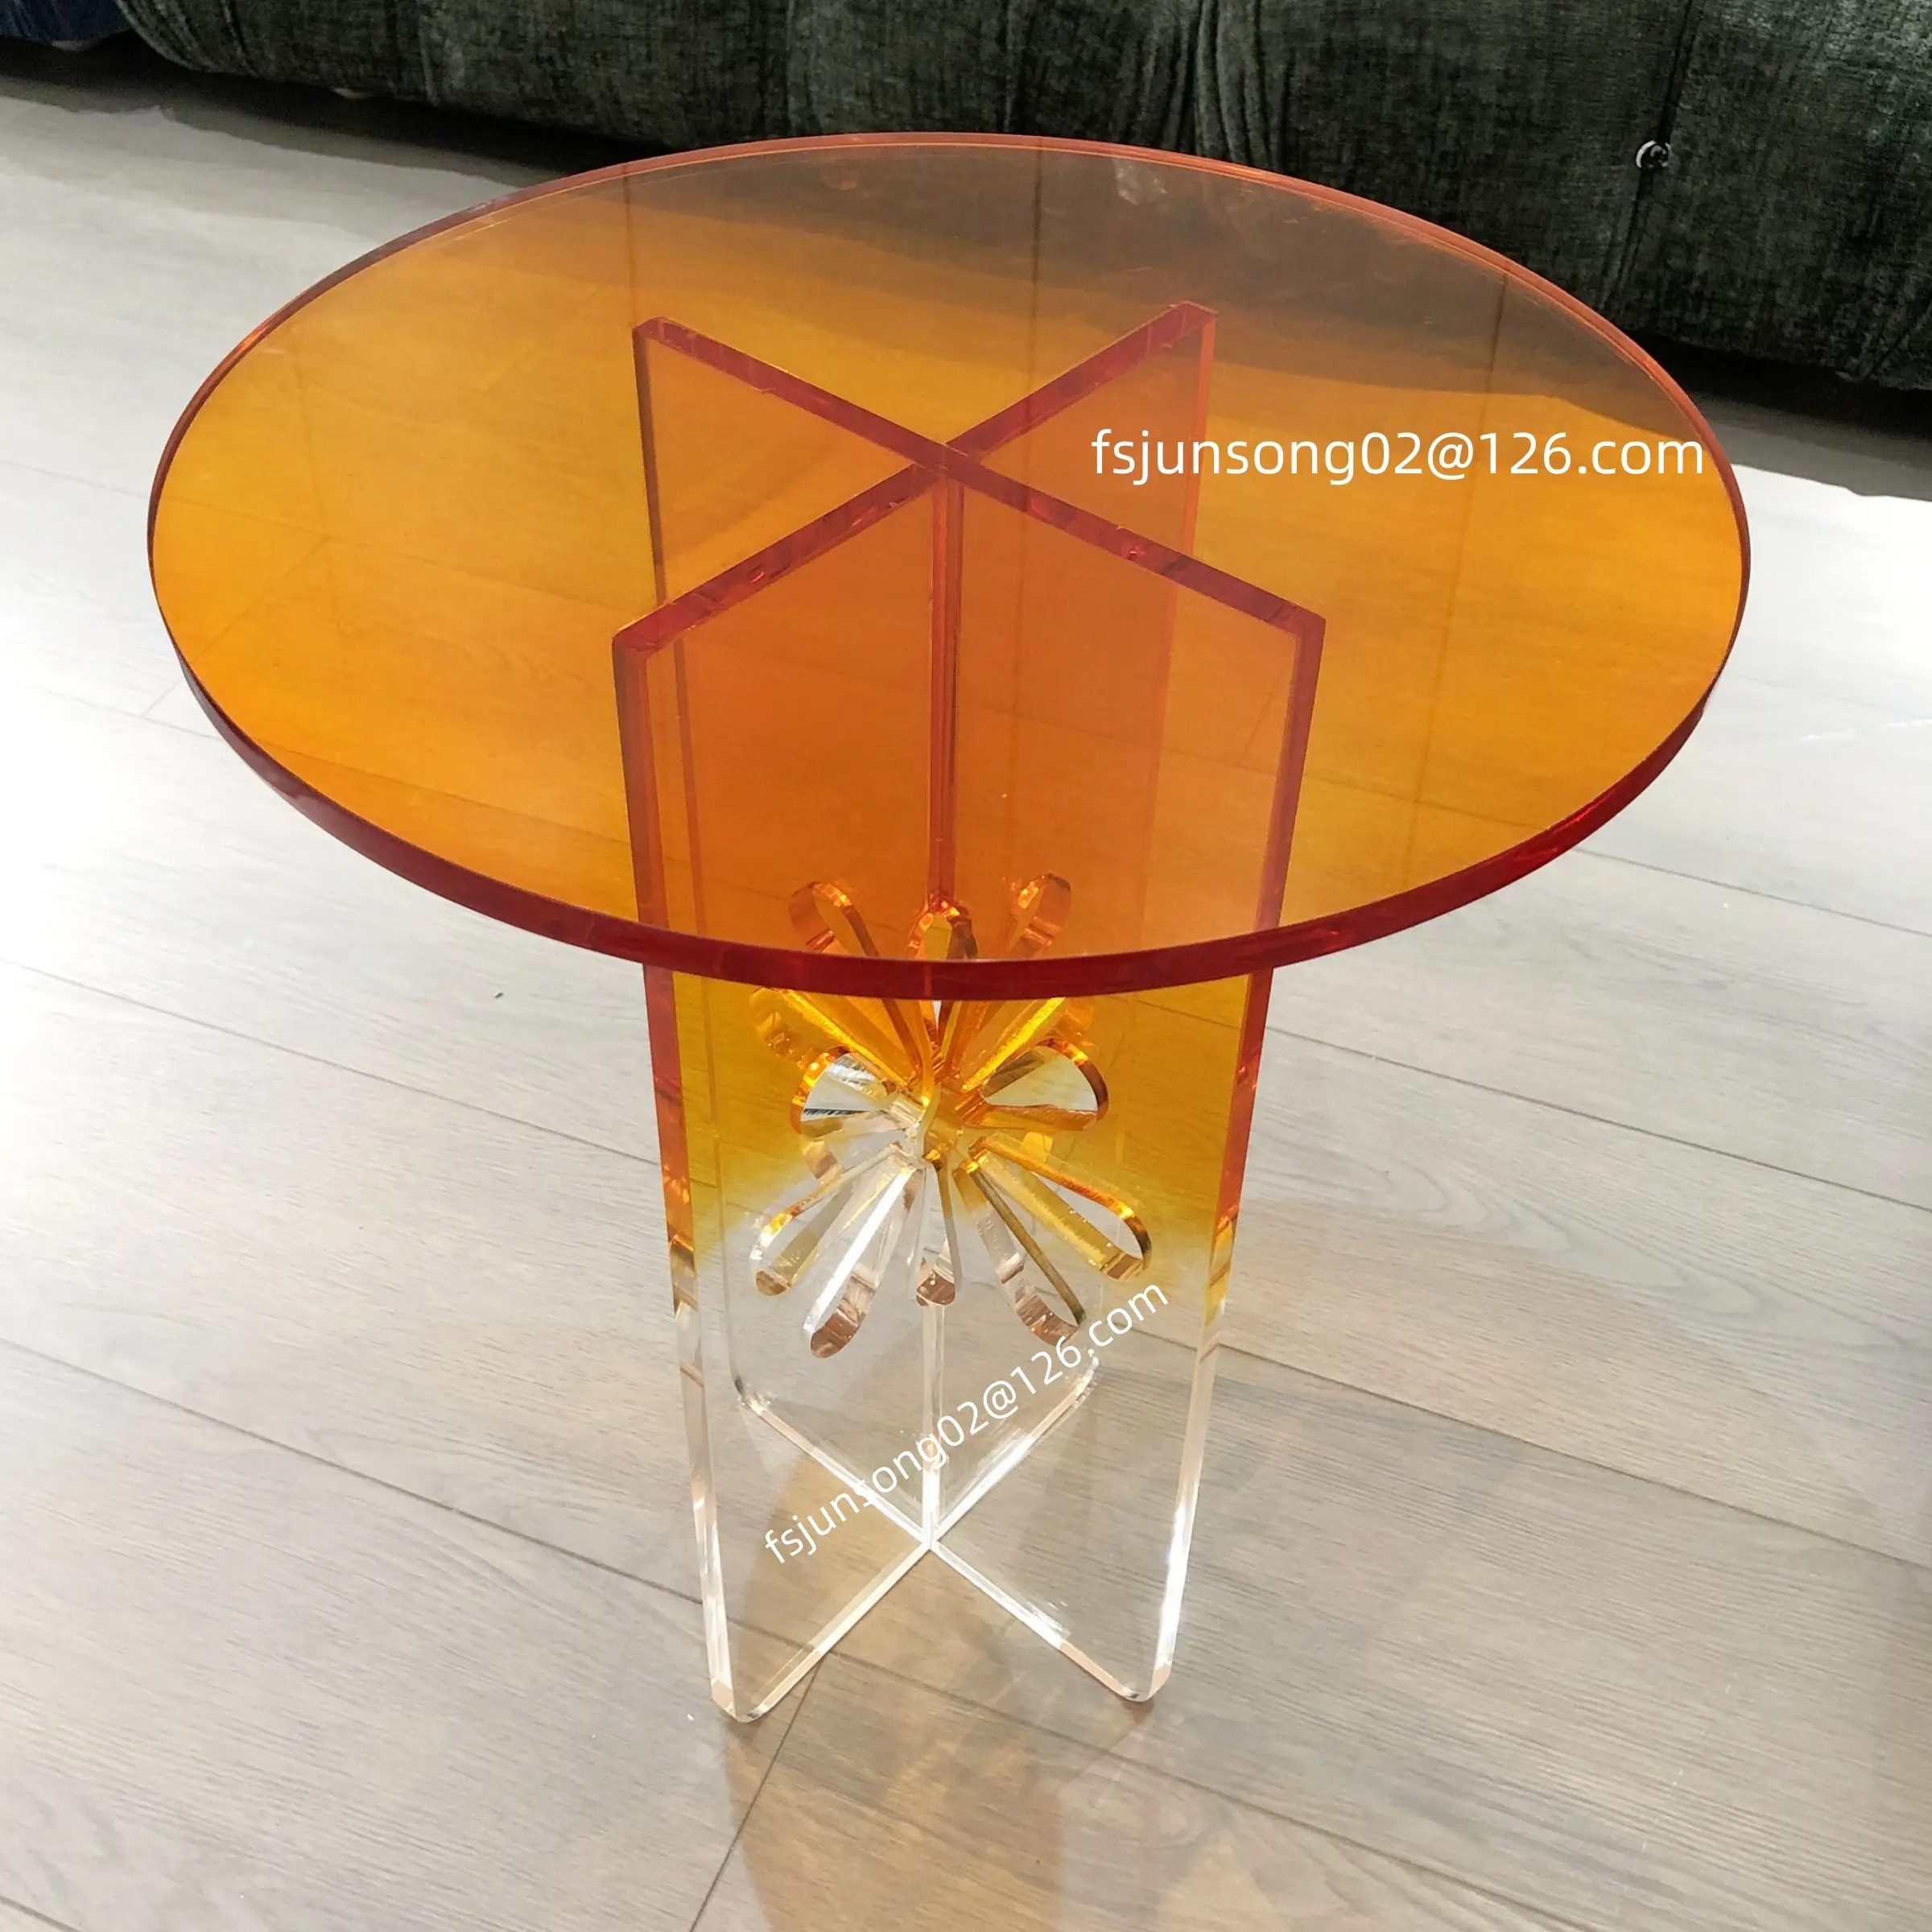 JS โต๊ะข้างเล็กทำจากอะคริลิคหลากสี AC01ชุดโต๊ะกาแฟสีส้มผสมสีขาวเฟอร์นิเจอร์ฟัสซานทรงกลมขนาด40ซม. ราคาขายส่ง